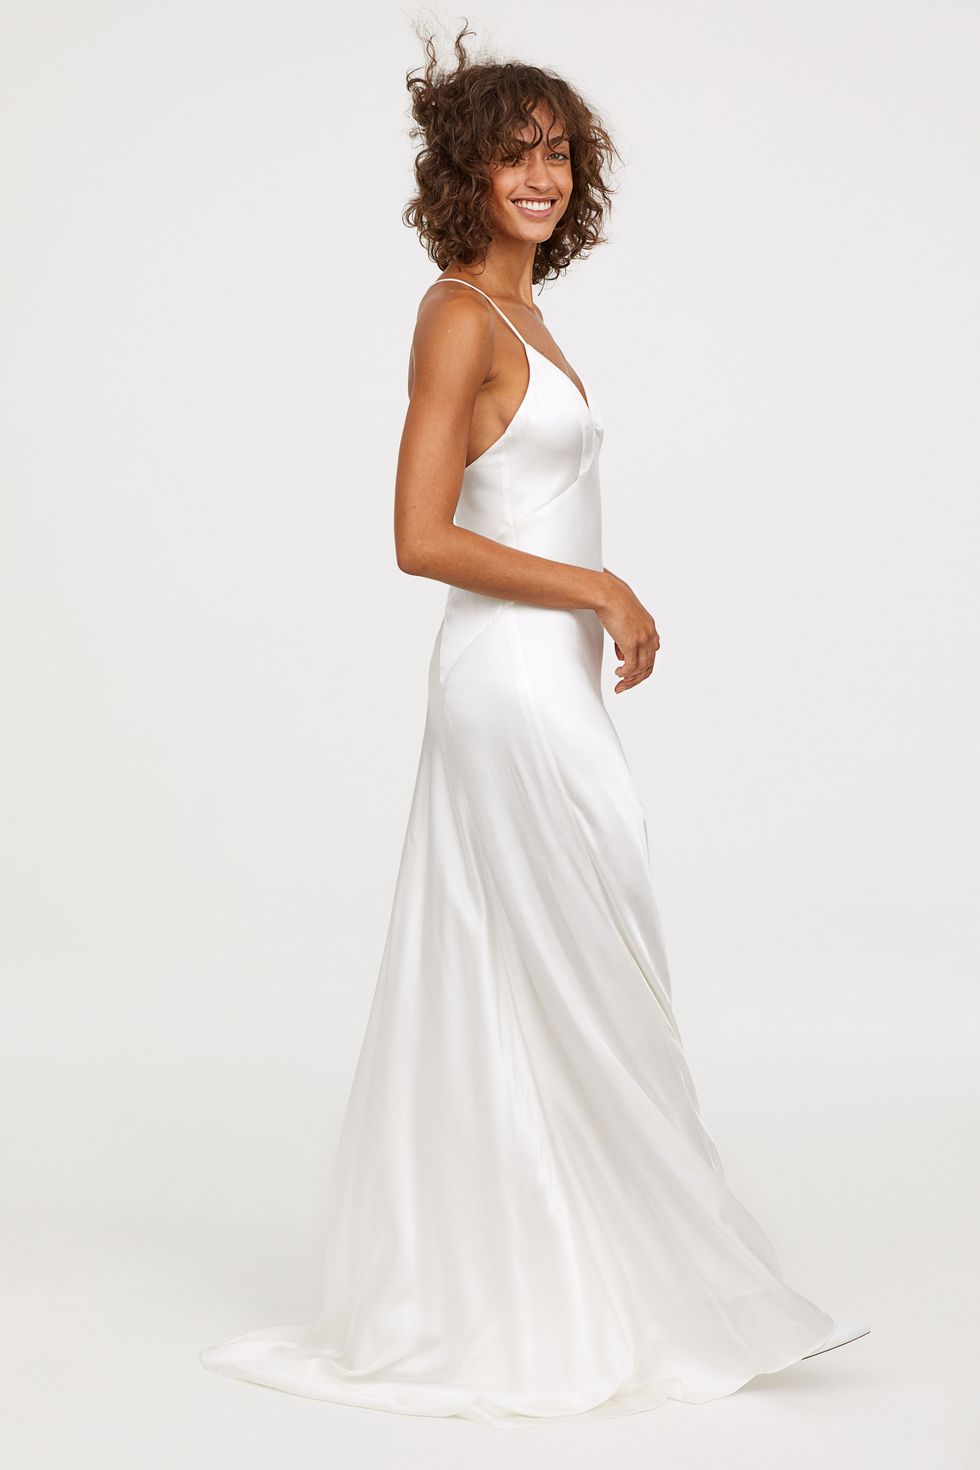 H&M vende un nuevo vestido de novia muy barato de estilo lencero